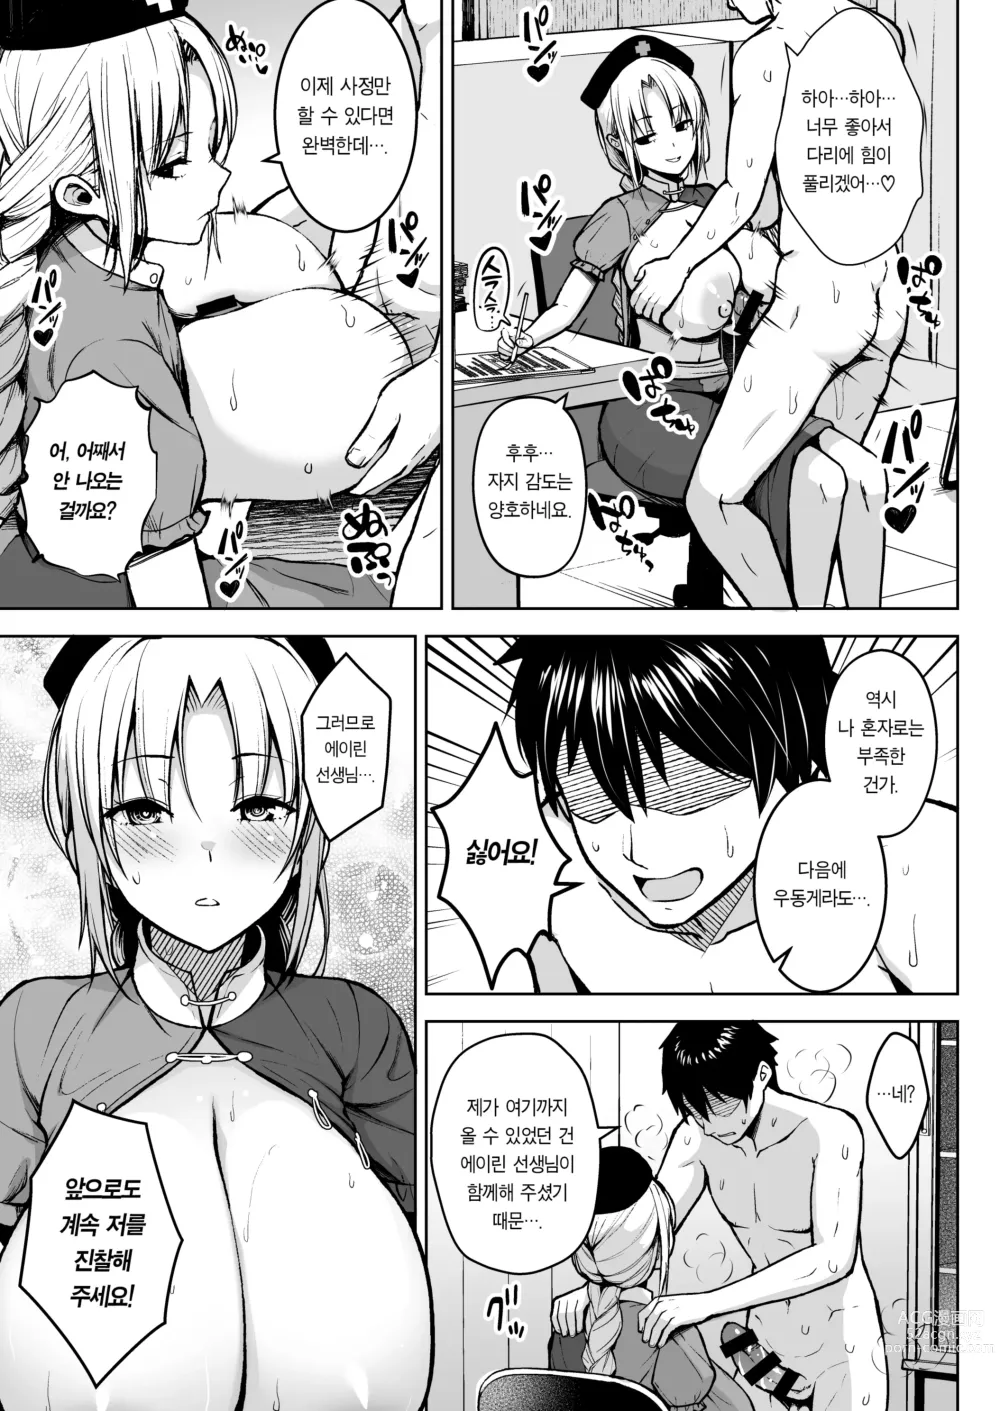 Page 17 of doujinshi 에이린이 가슴을 존나 괴롭혀져서 P컵이 되기까지의 이야기